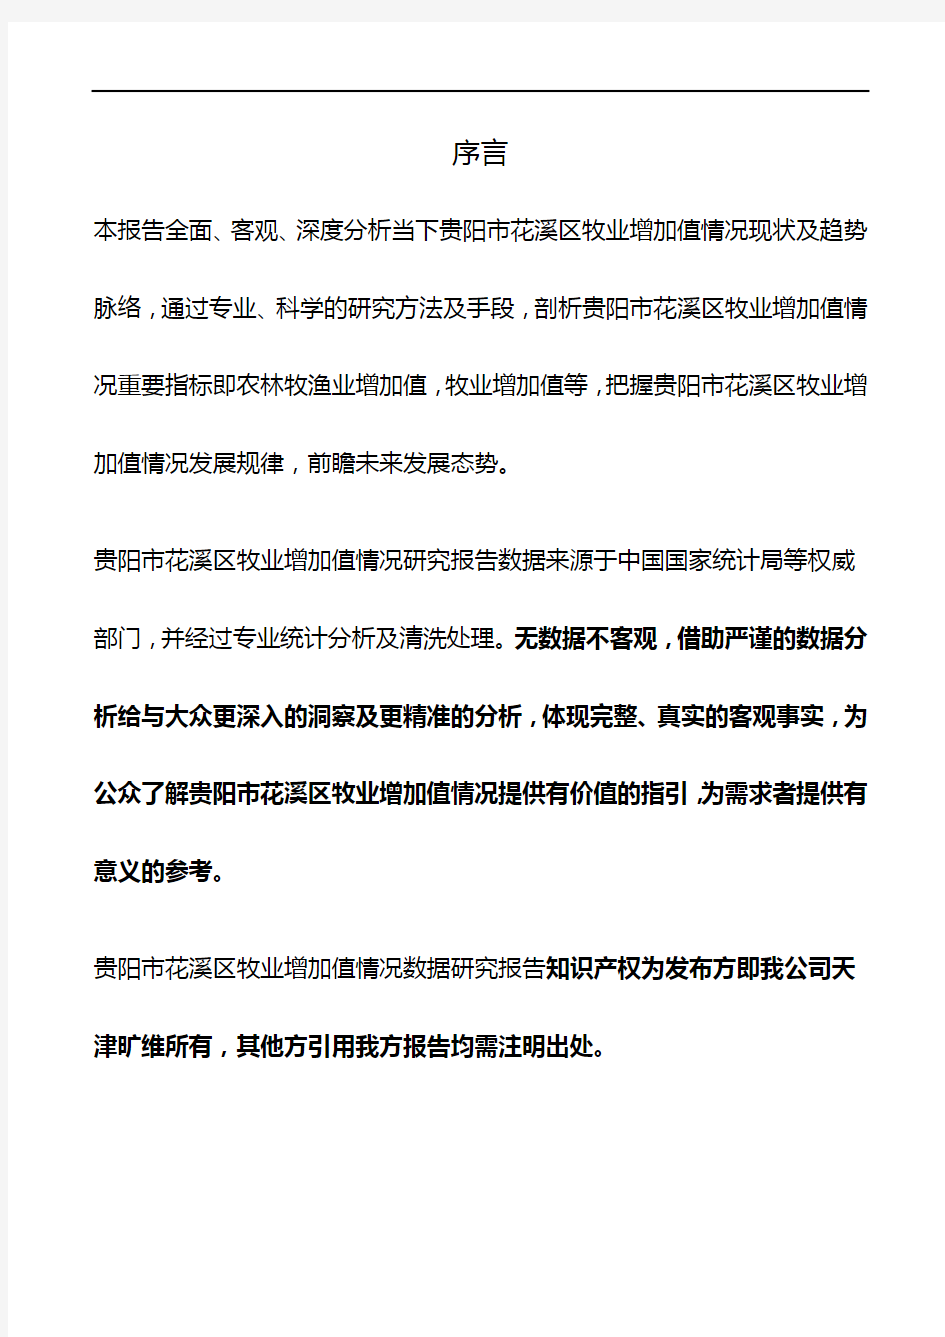 贵州省贵阳市花溪区牧业增加值情况3年数据研究报告2020版